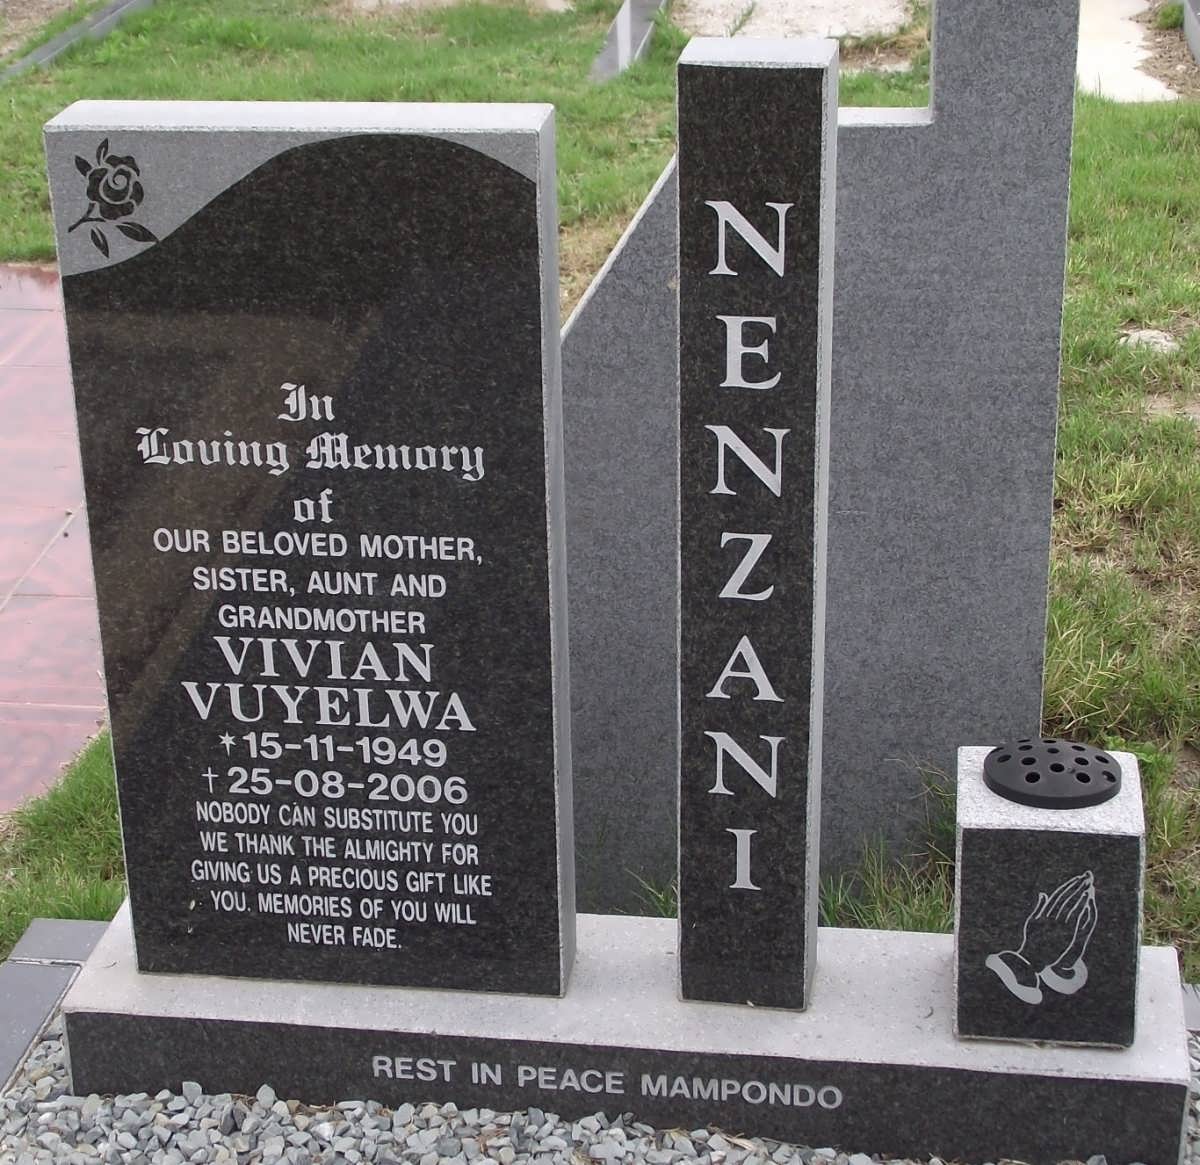 NENZANI Vivian Vuyelwa 1949-2006